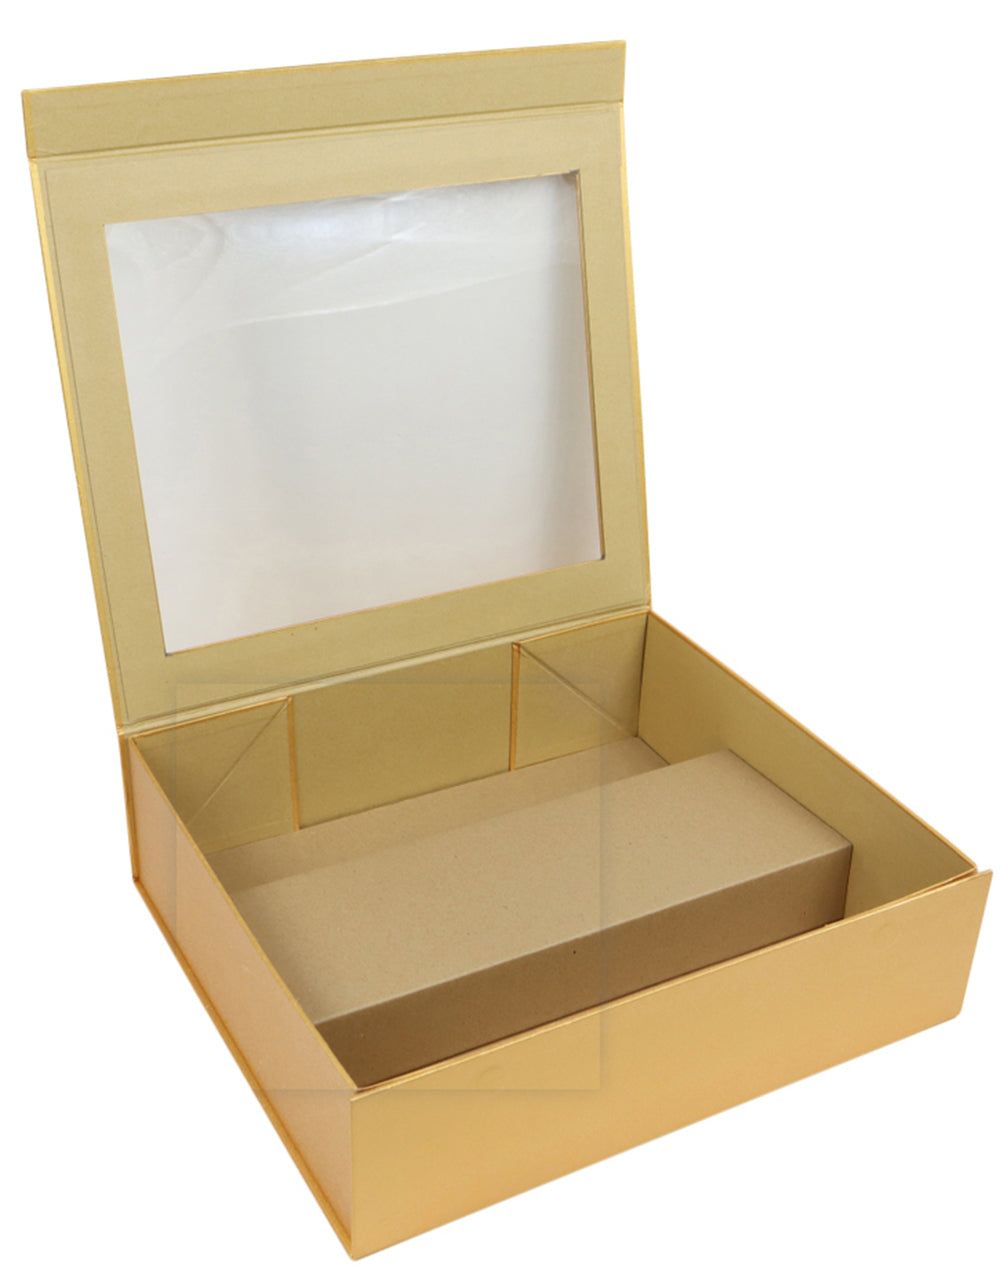 WINE BOX Paperboard Box w/ Double Inserts Wine Bottle